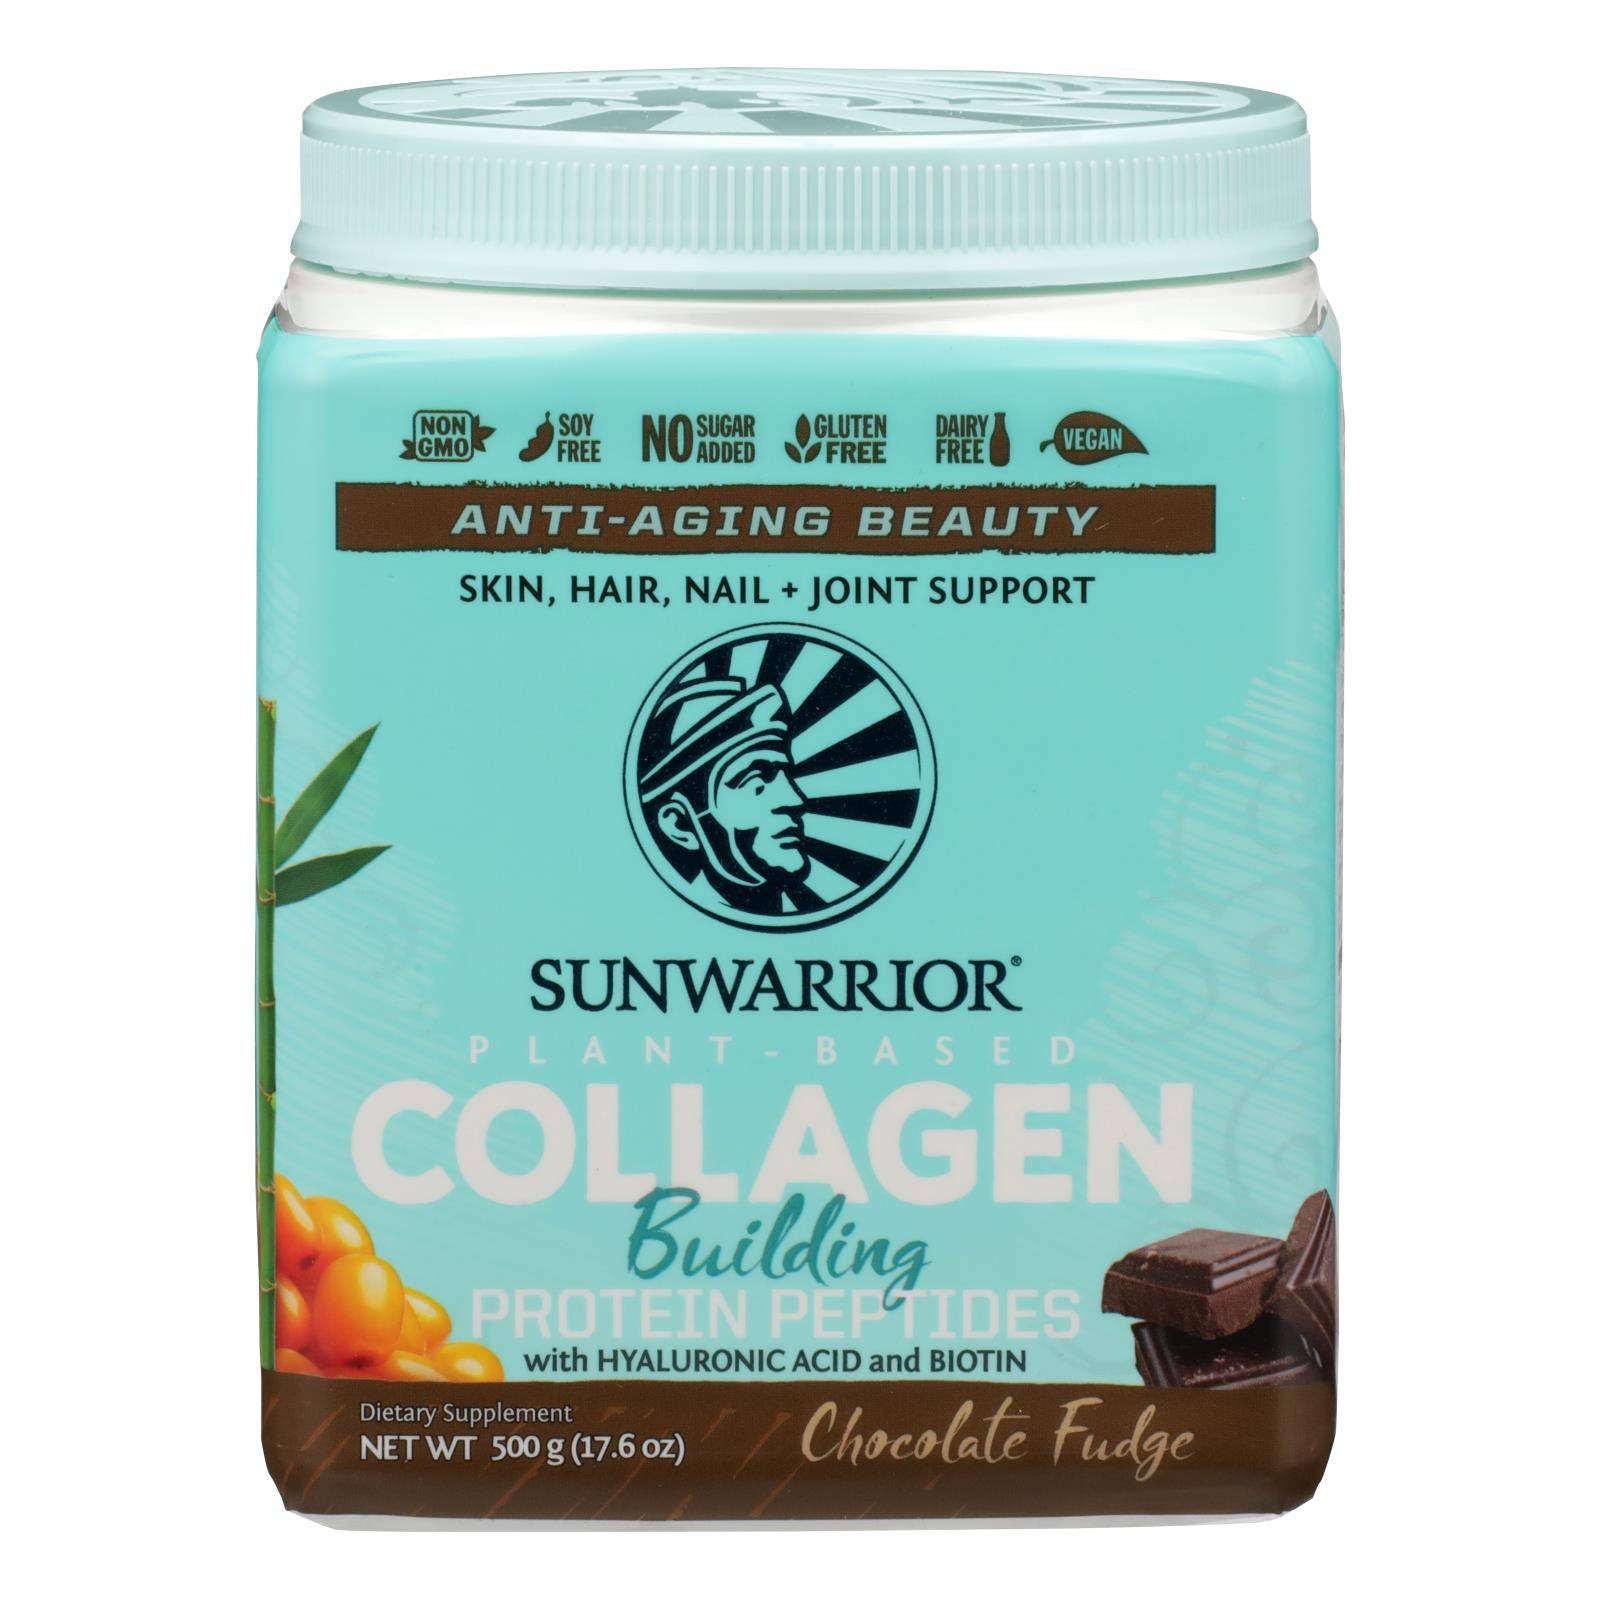 Sunwarrior - Collagen Chocolate - 1 Each - 17.6 Oz | OnlyNaturals.us